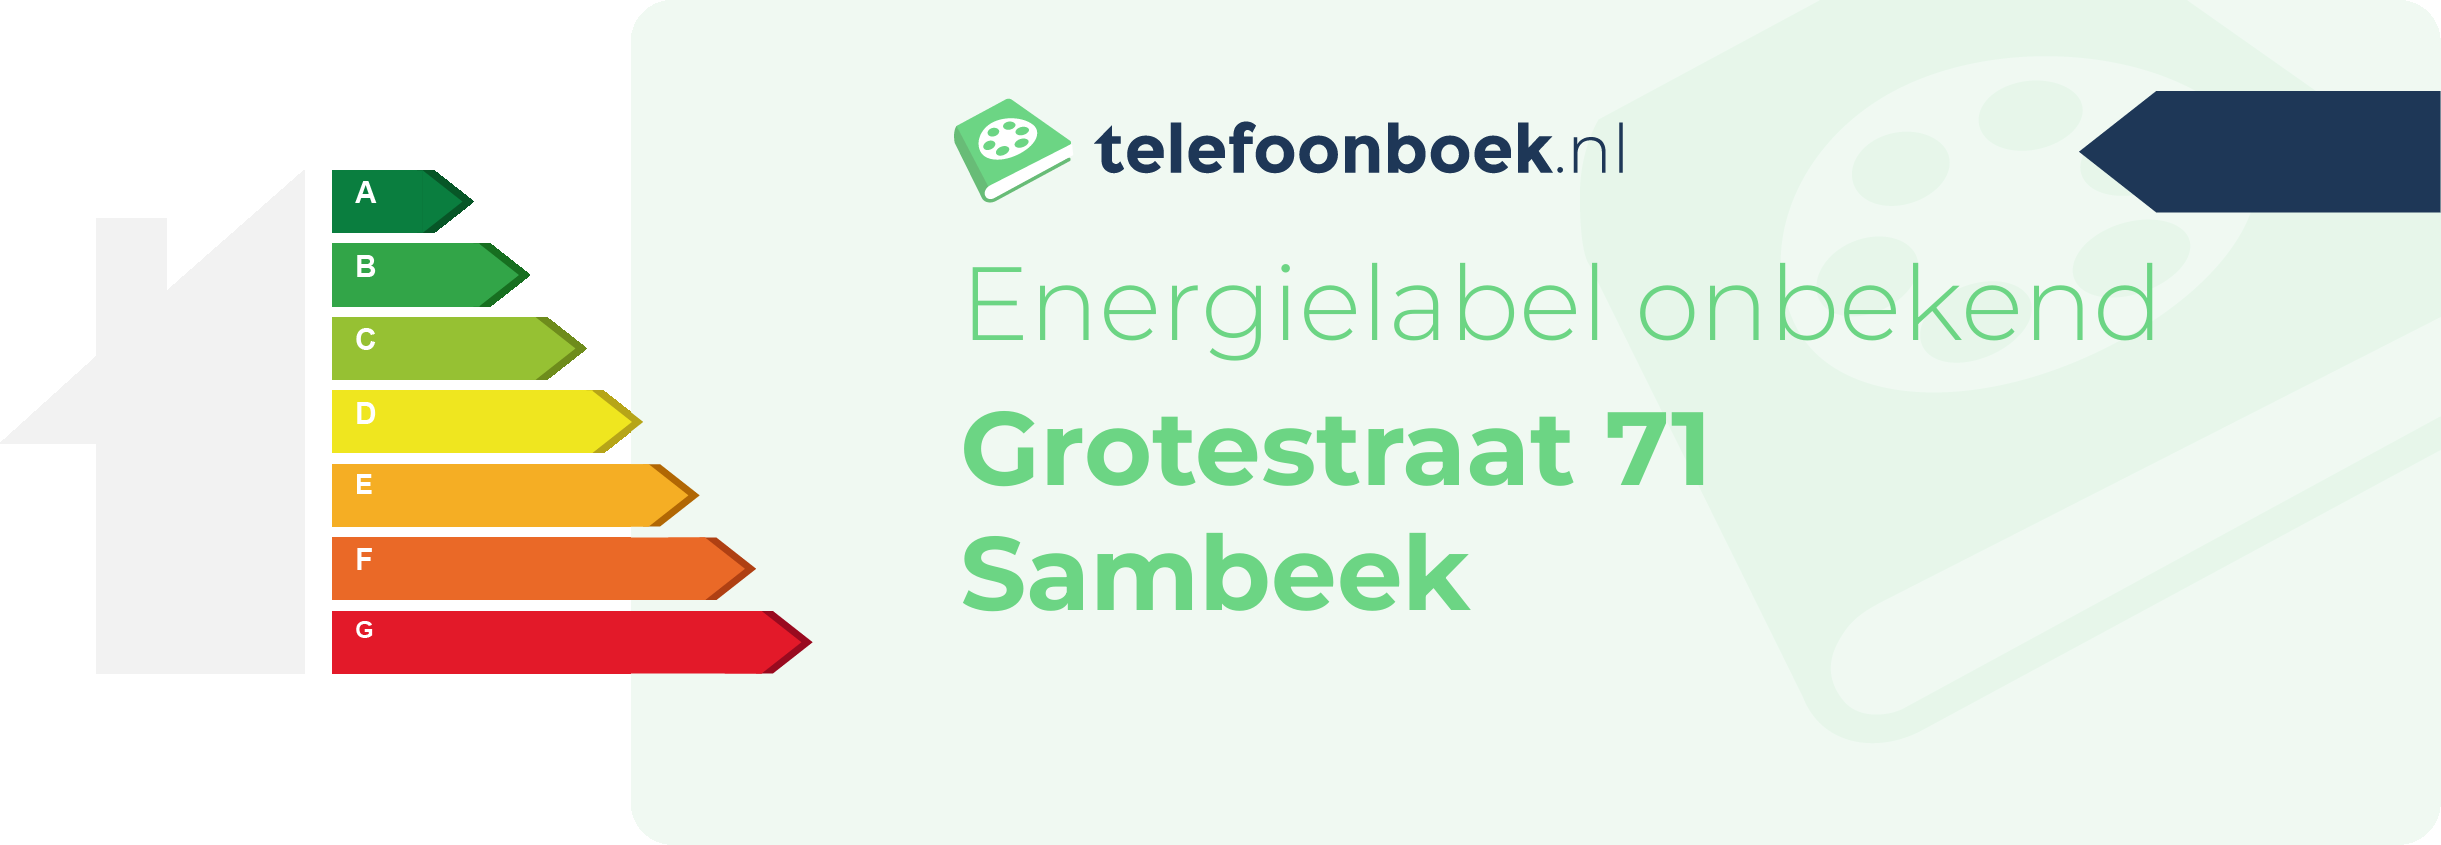 Energielabel Grotestraat 71 Sambeek